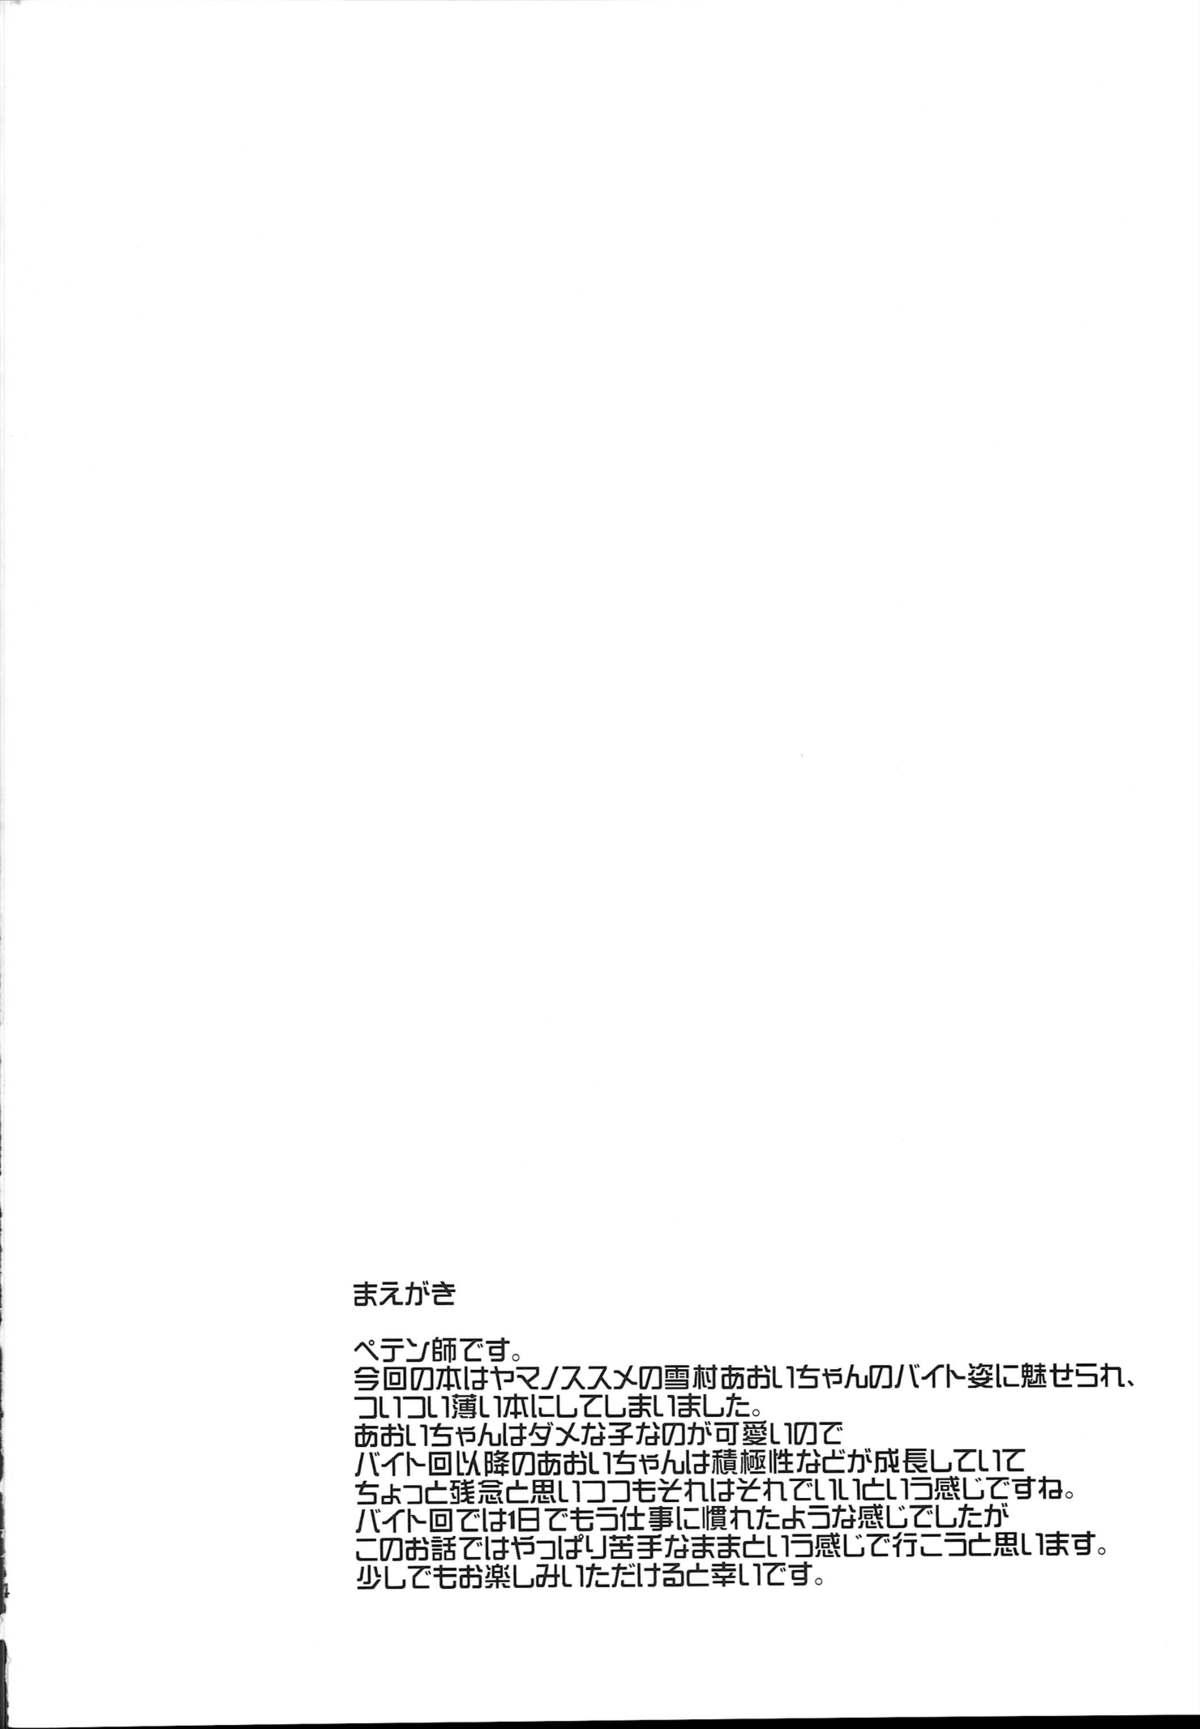 Interacial Bait no Musume - Yama no susume Facefuck - Page 3